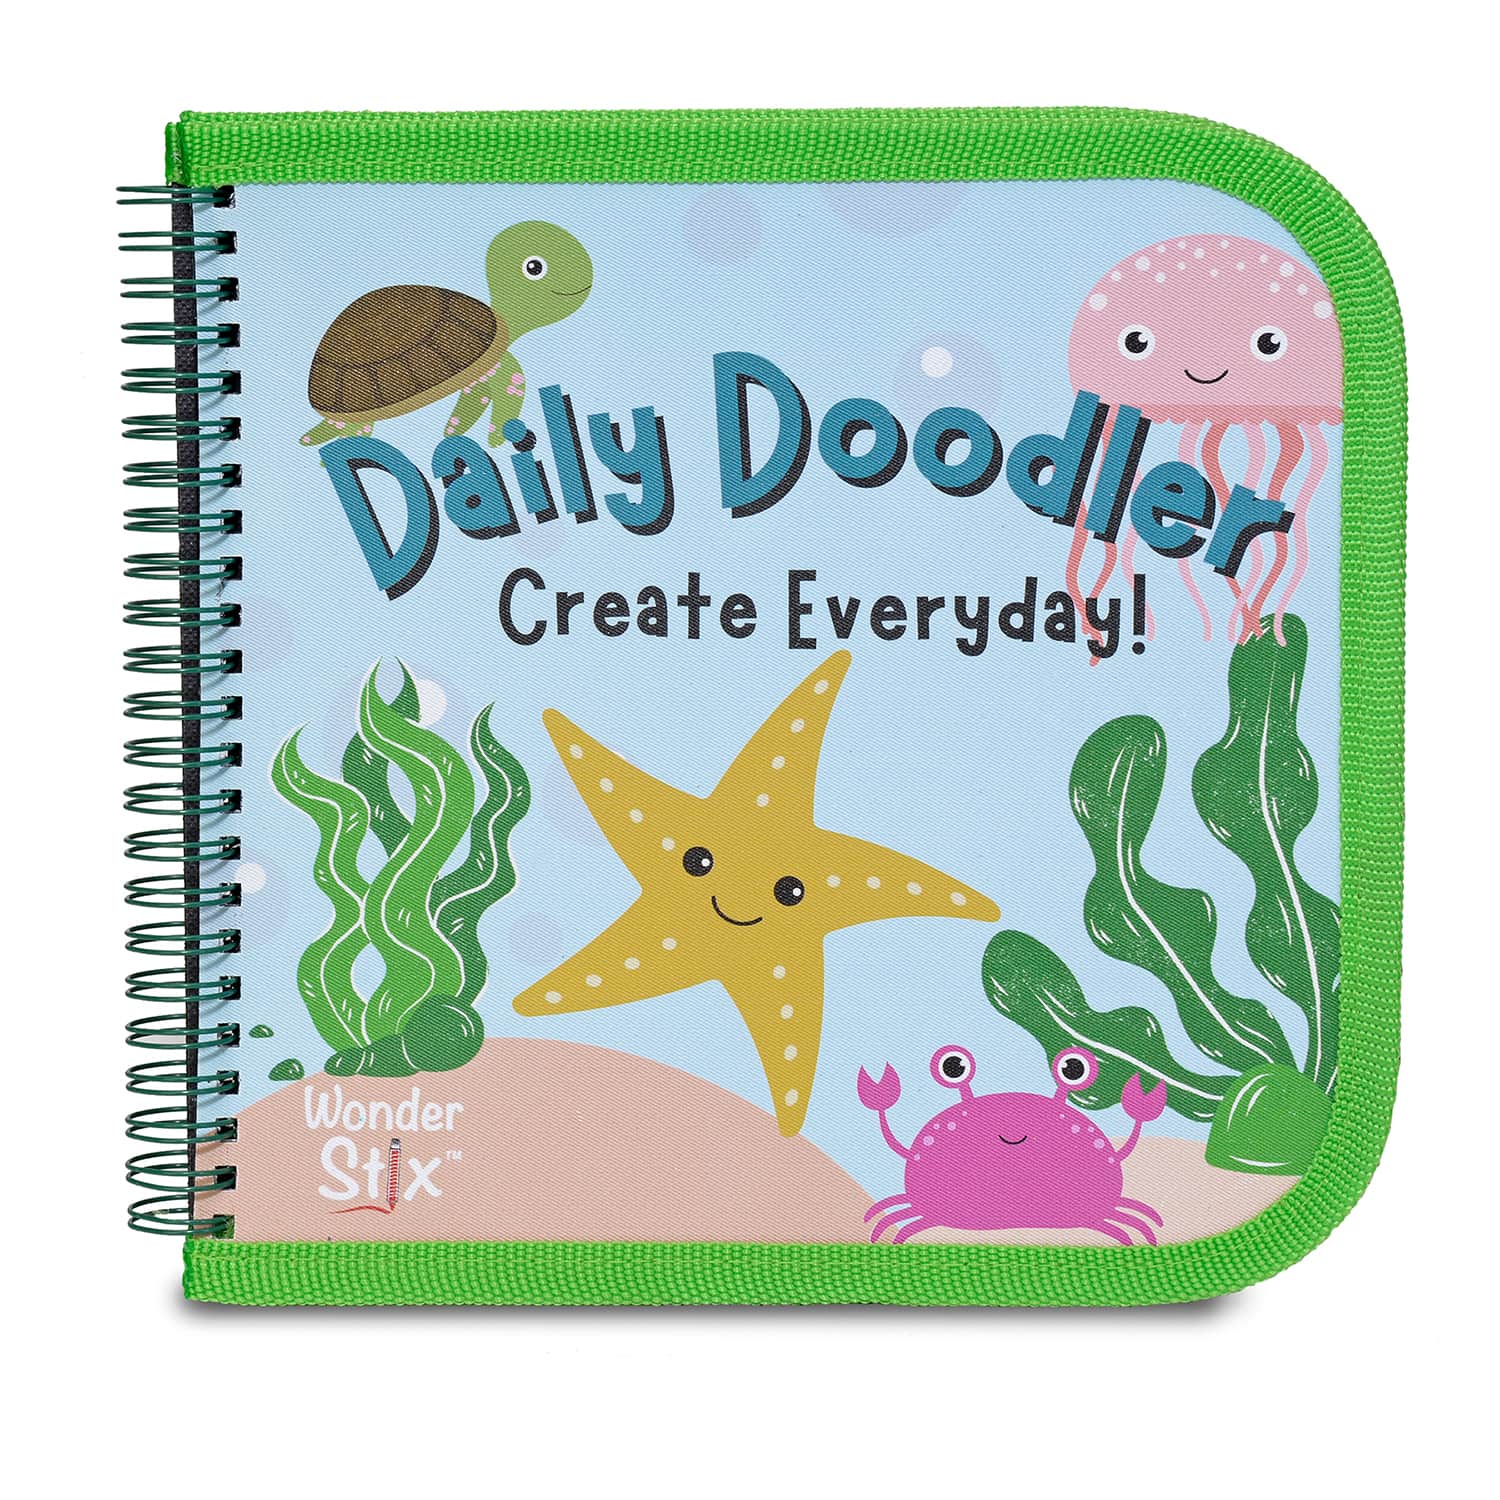 The Pencil Grip&#x2122; Sea Life Daily Doodler Reusable Activity Book Kit